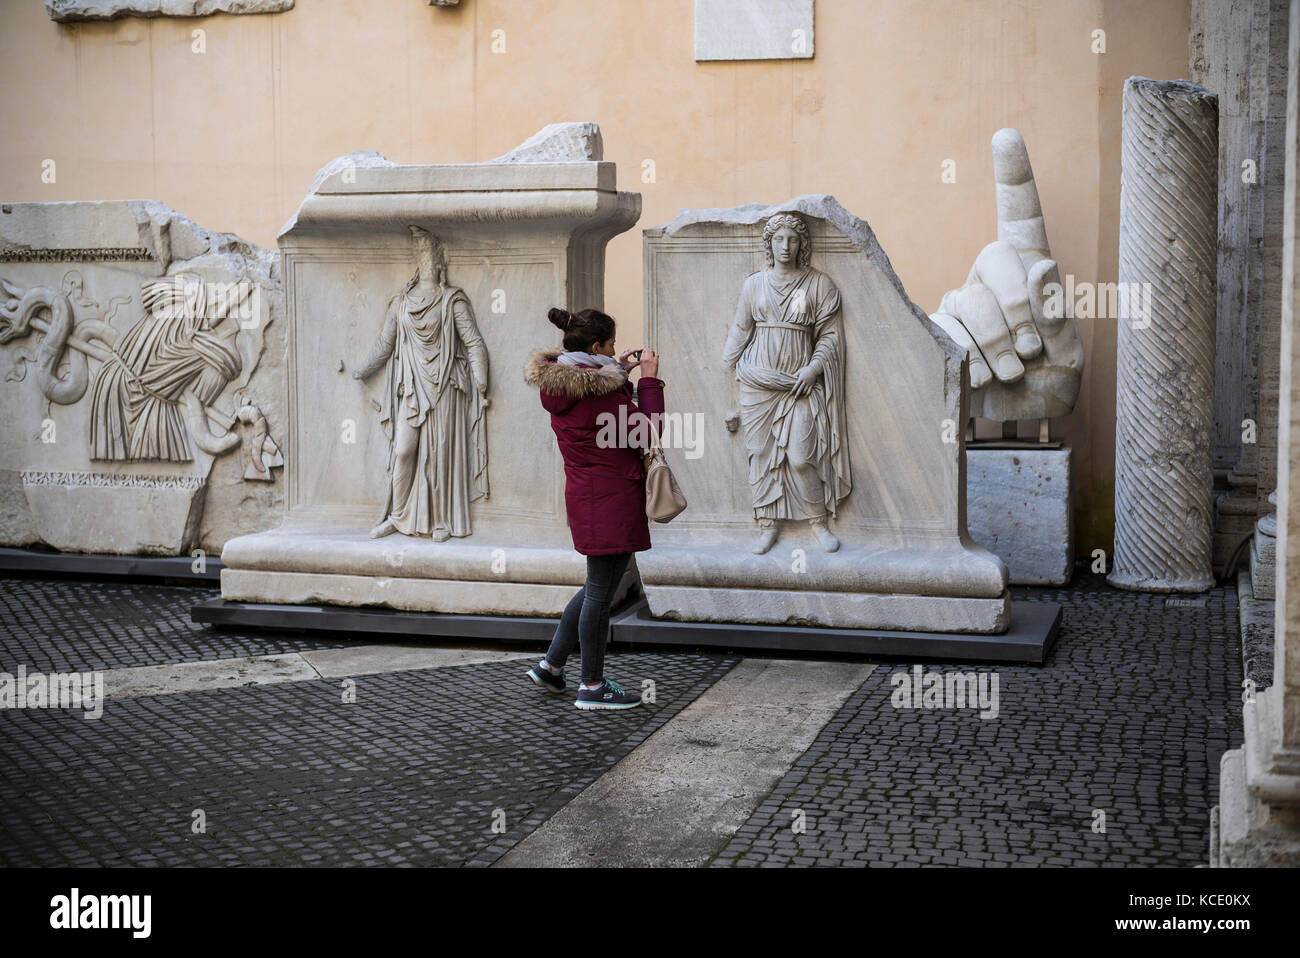 Roma. Italia. Visitante mirando los relieves del Templo de Adriano en el patio del Palazzo dei Conservatori, Museos Capitolinos. Foto de stock